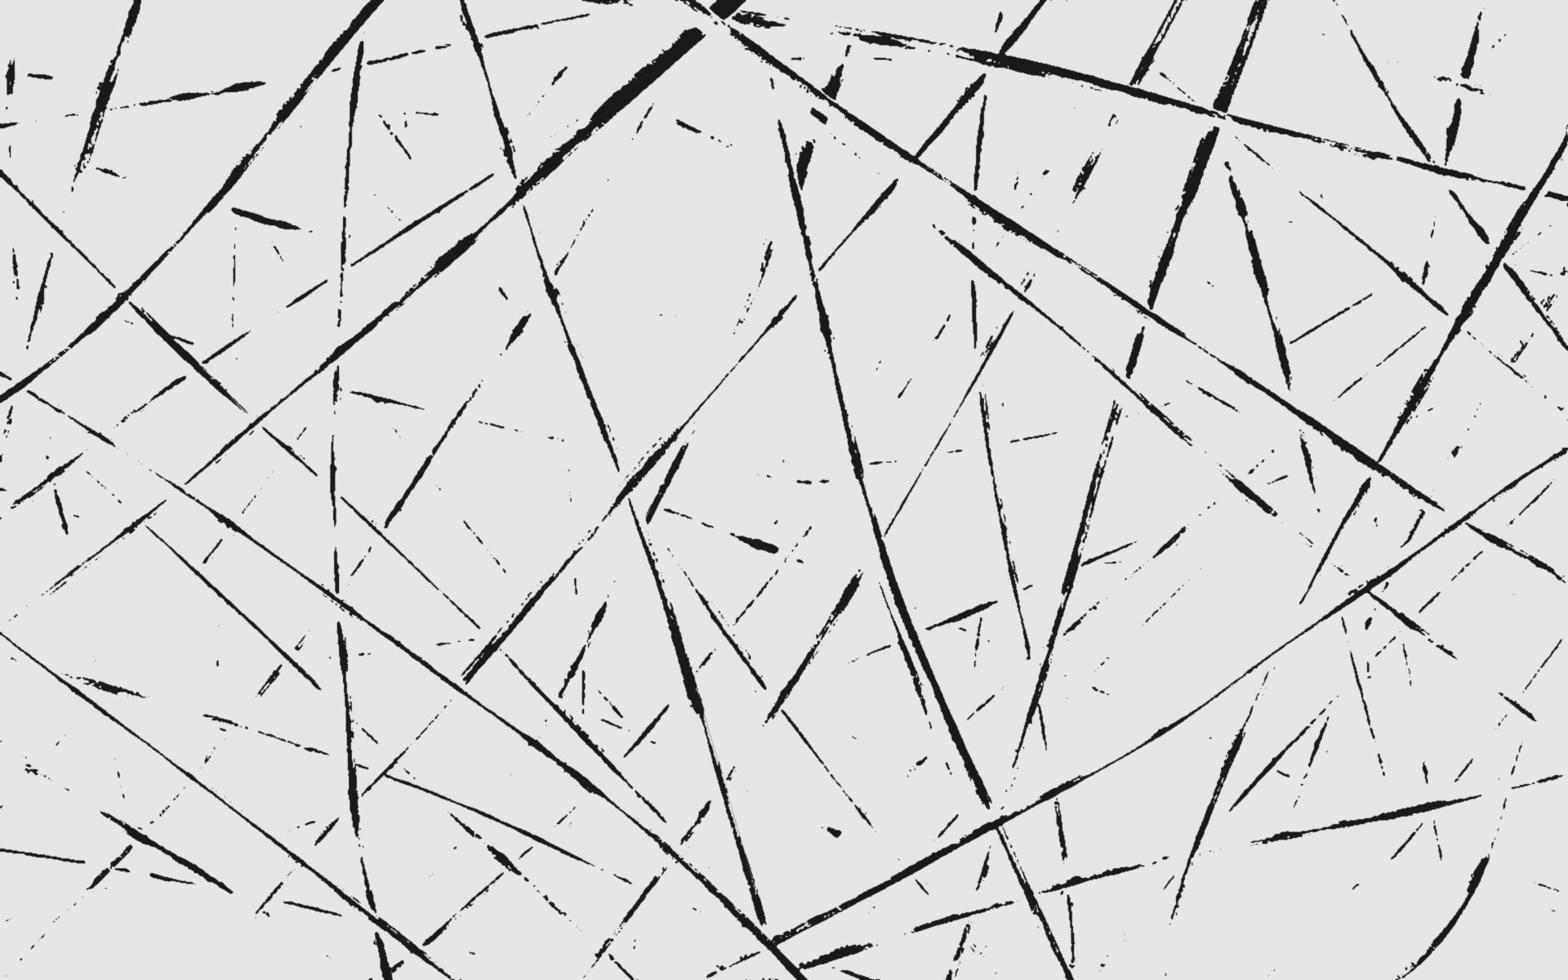 fundo urbano grunge riscado textura vetor sobreposição de poeira angústia granulado efeito sujo ilustração vetorial de pano de fundo angustiado isolado preto no fundo branco